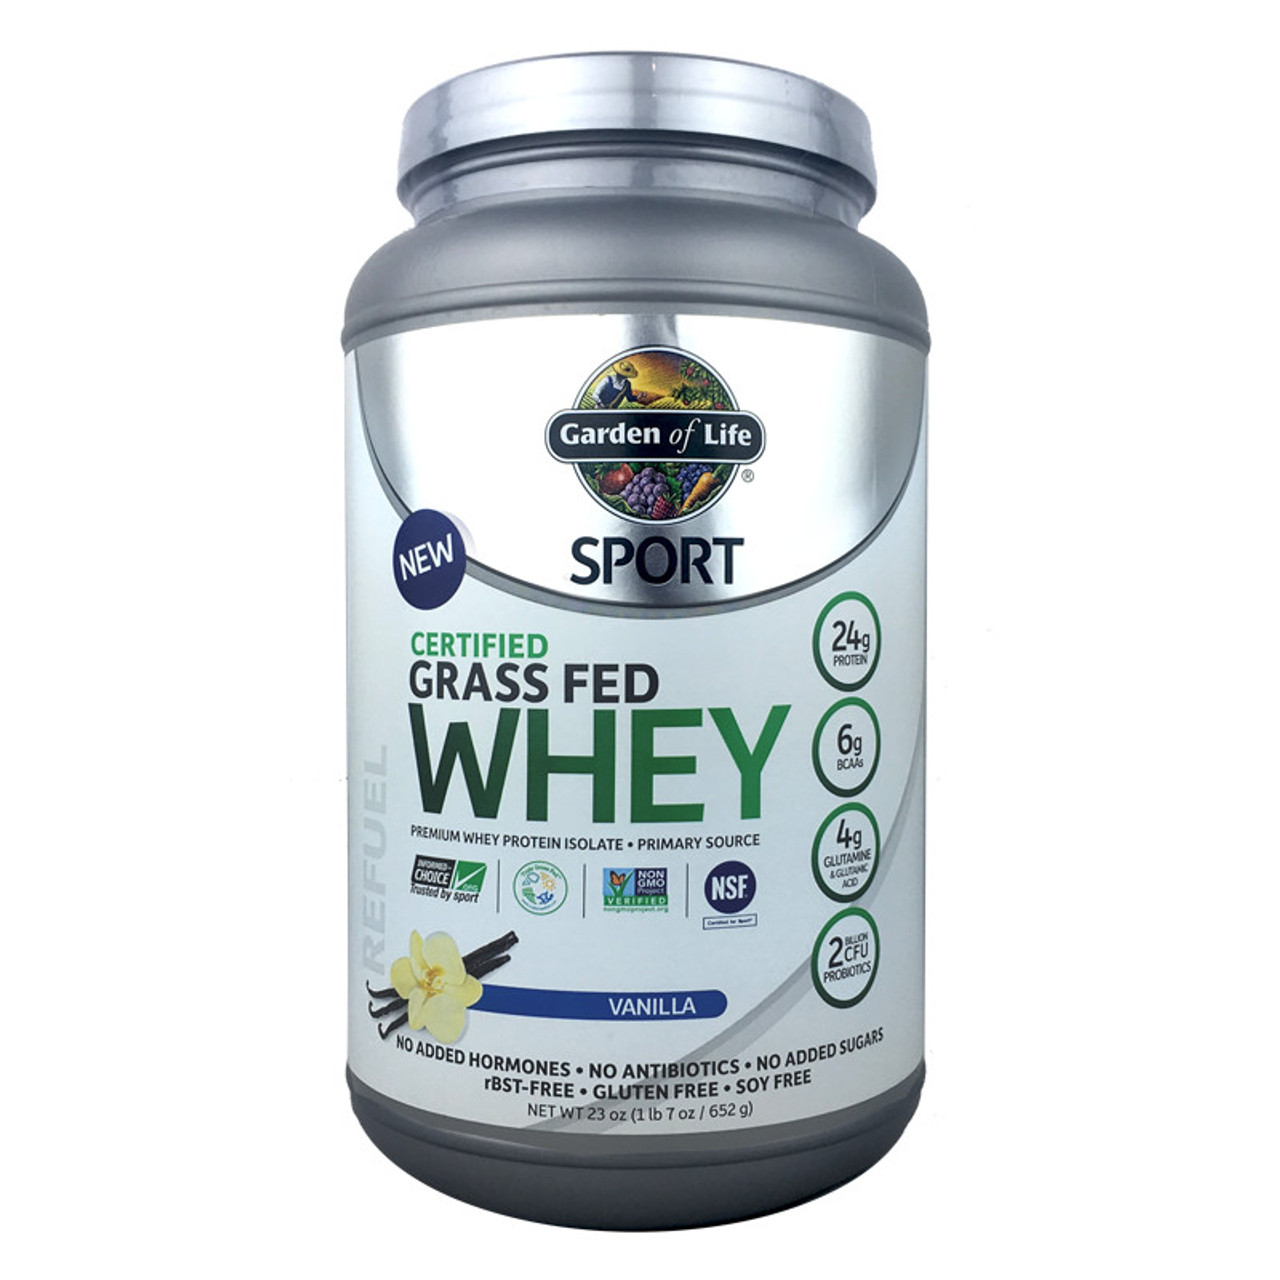 SPORT Grass-Fed Whey Protein - Vanilla Flavor - Nutrimart